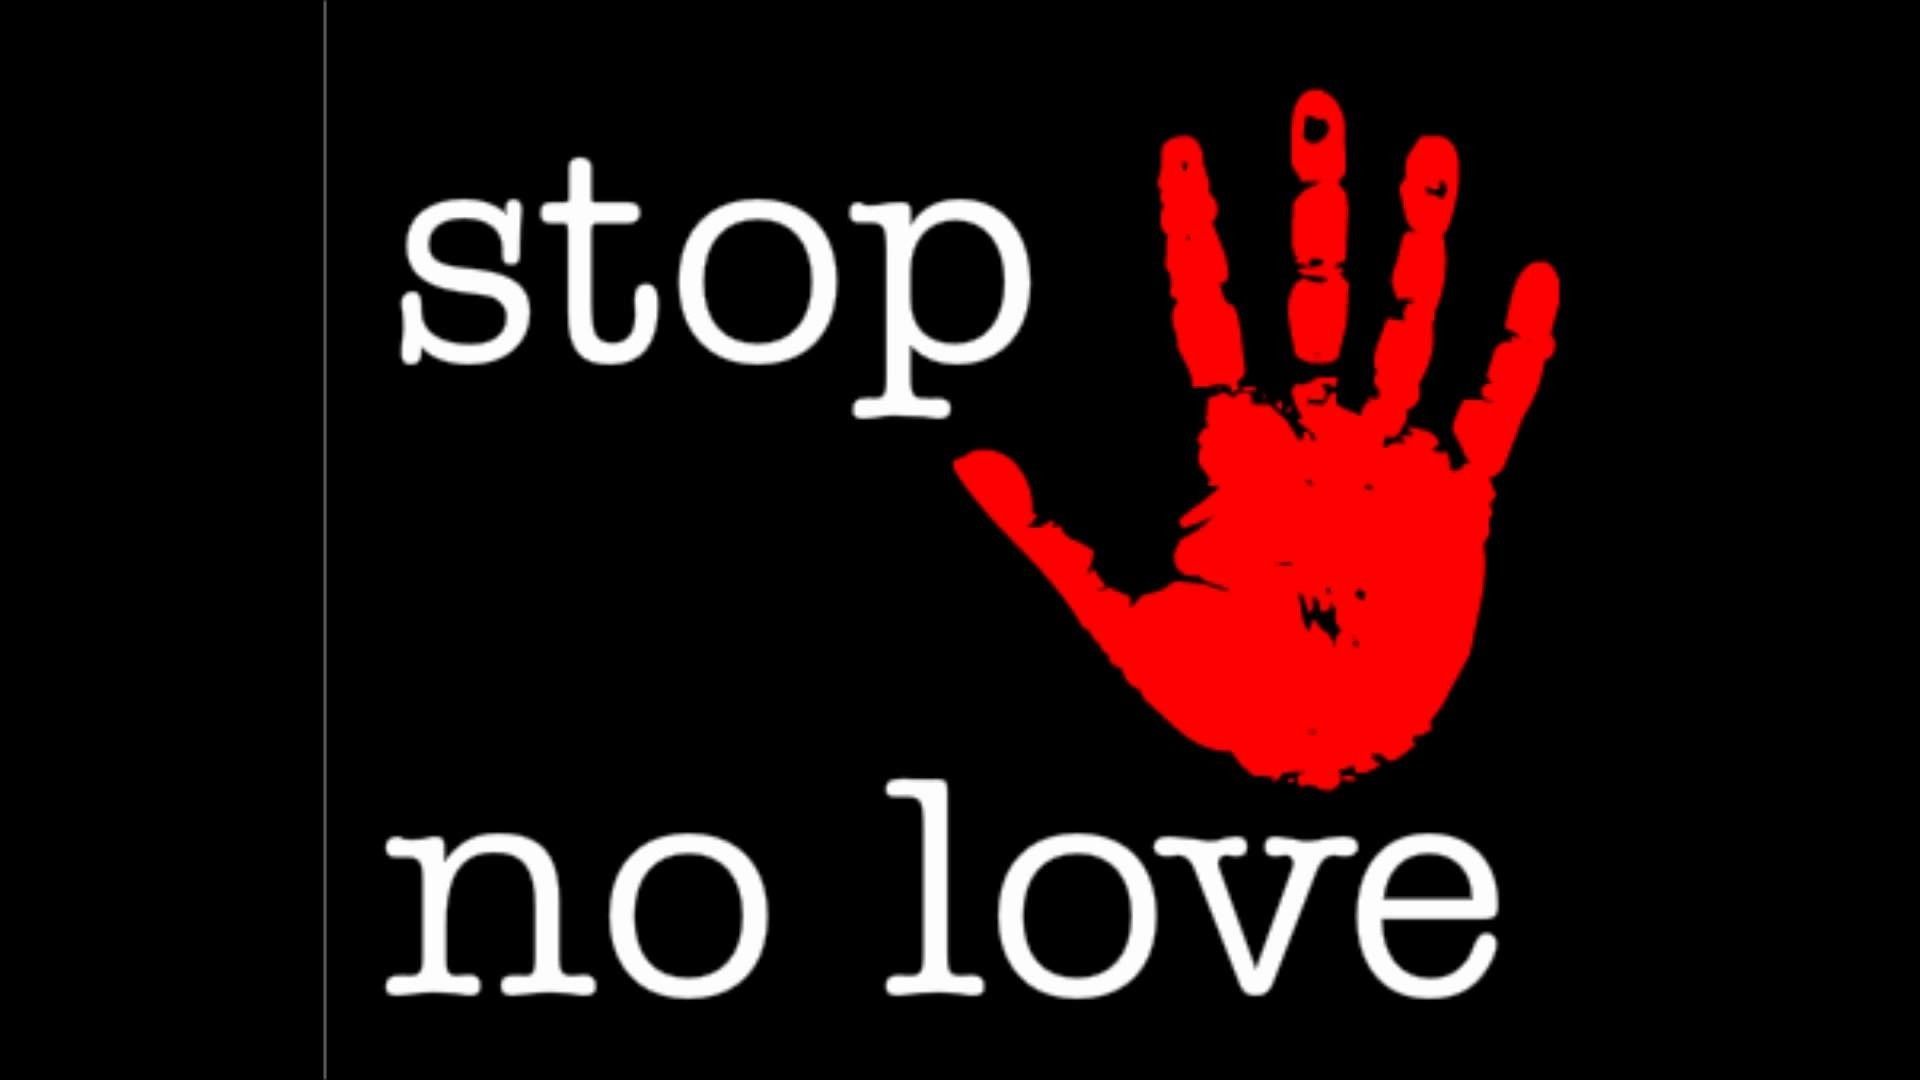 Show no love wallpaper by Octavius13  Download on ZEDGE  efcd